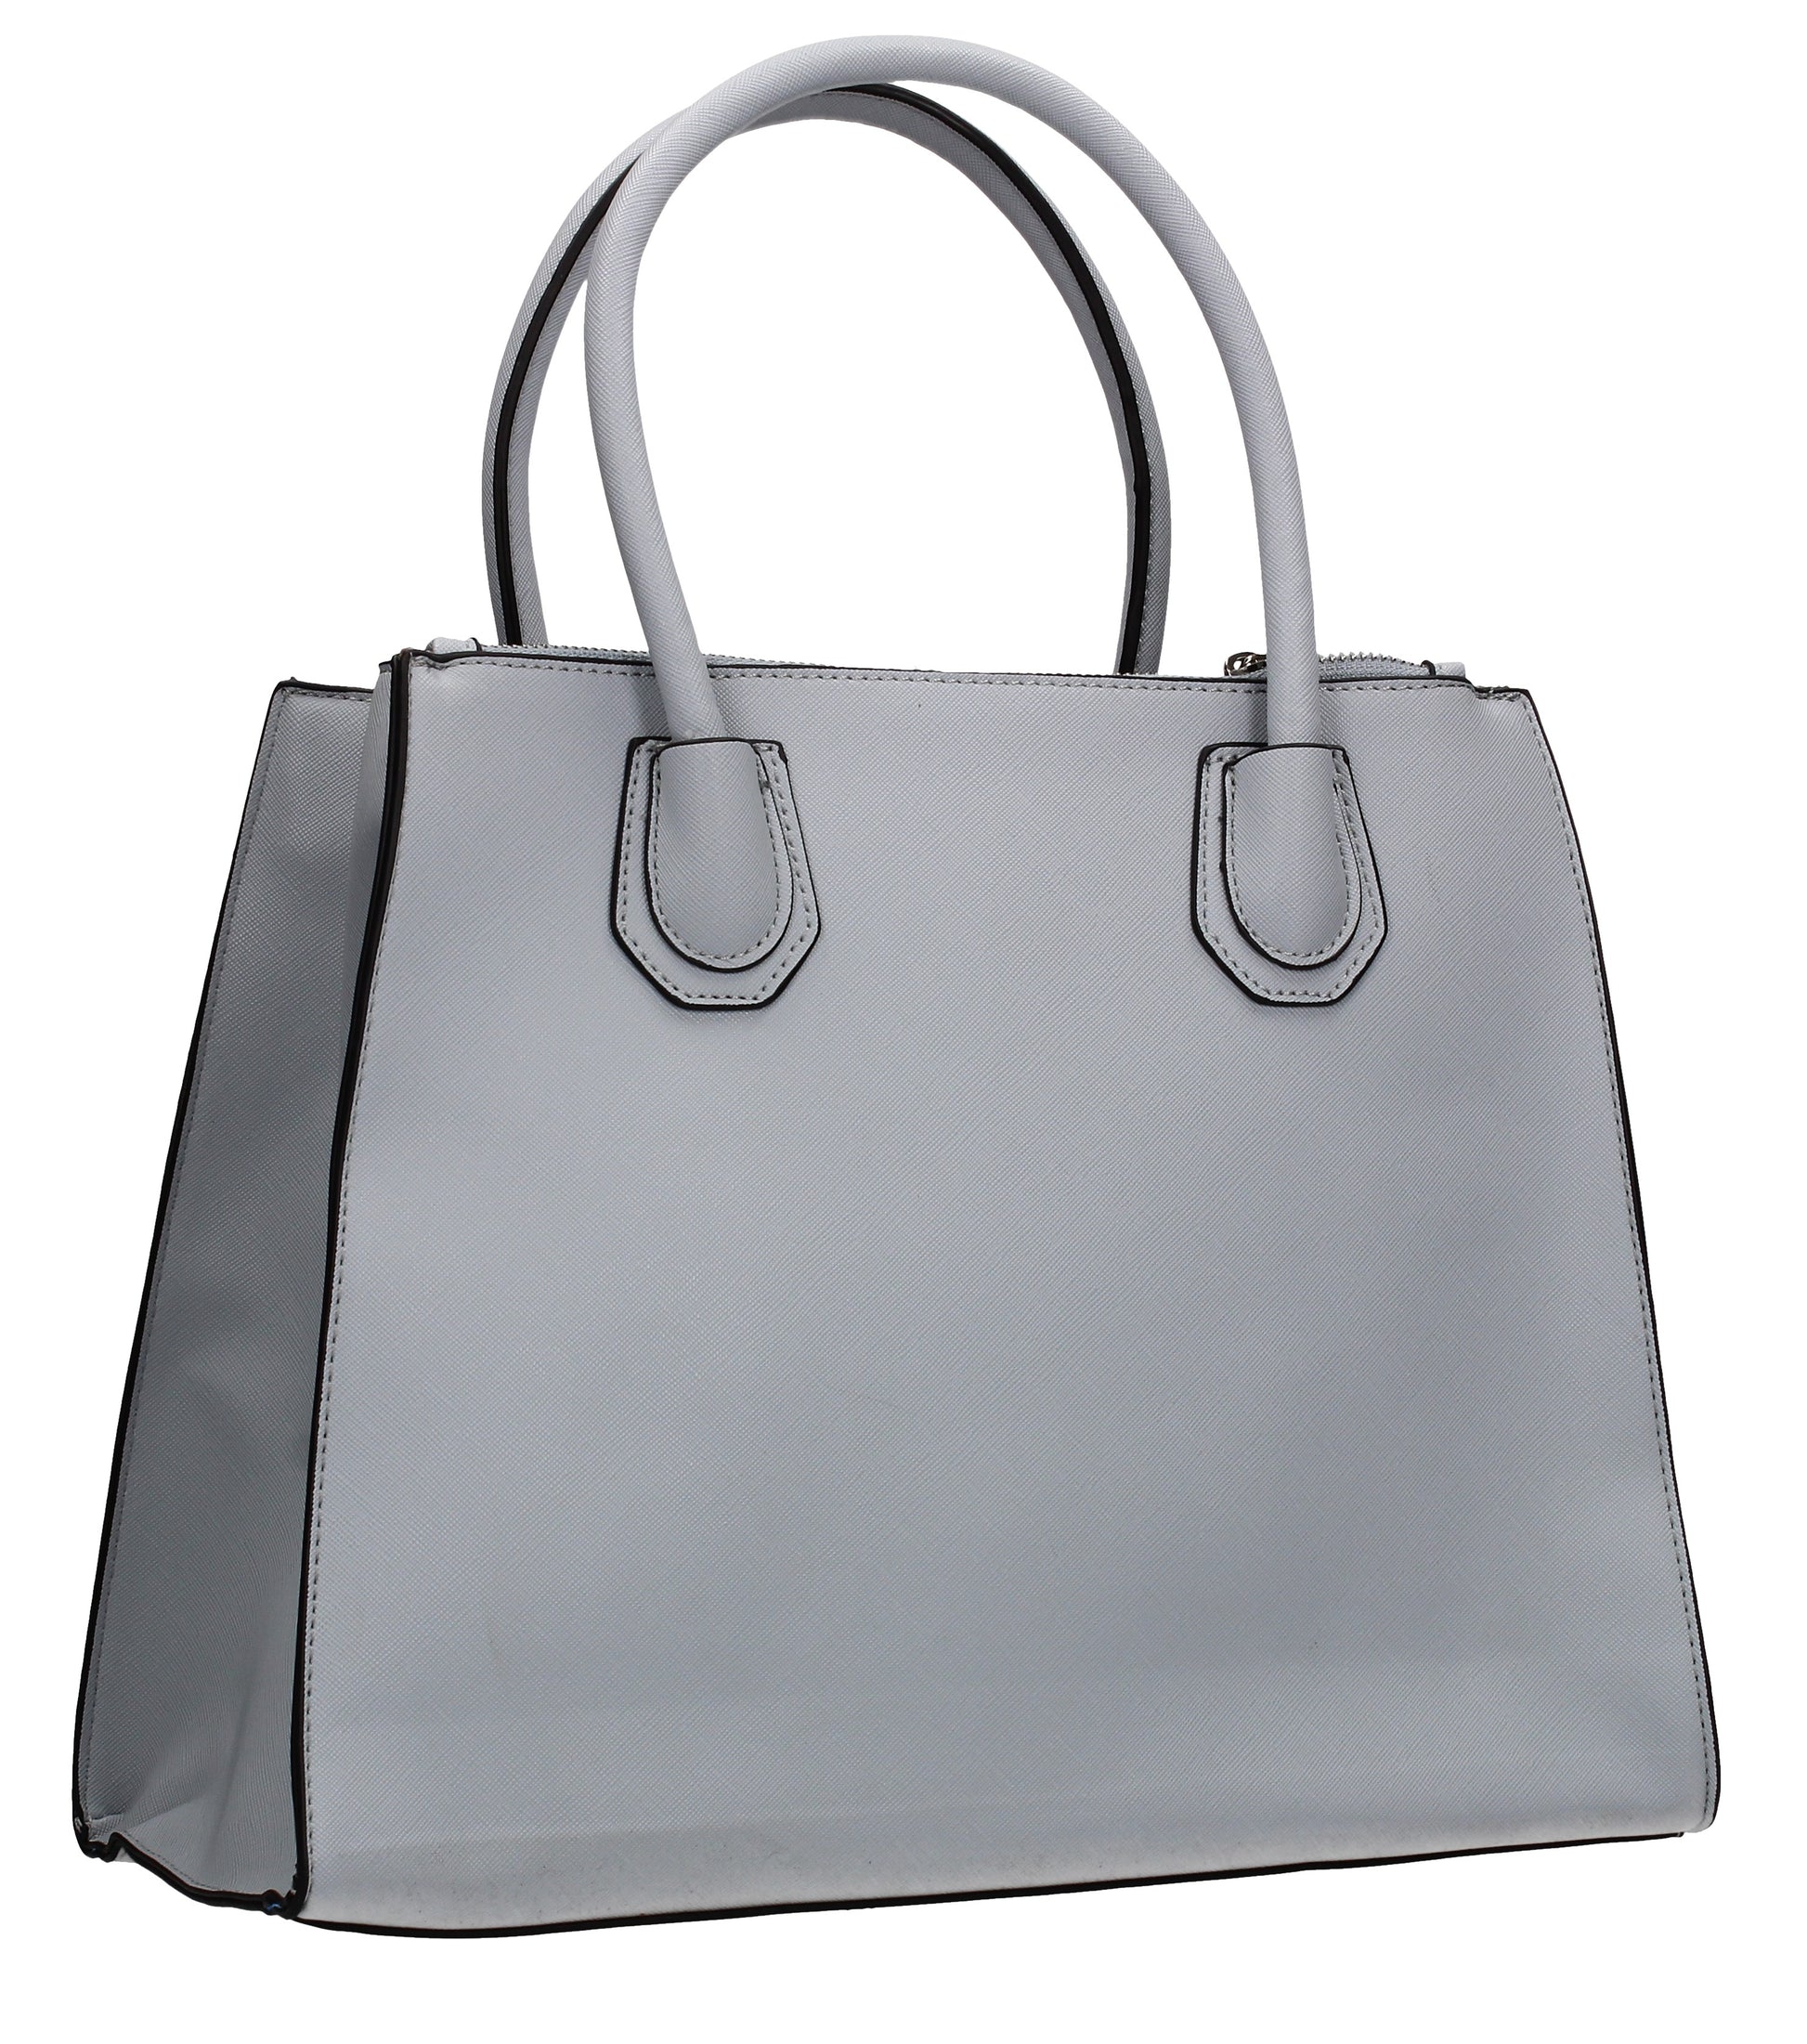 Hanna Floral Handbag Ash GreyBeautiful Cute Animal Faux Leather Clutch Bag Handles Strap Summer School